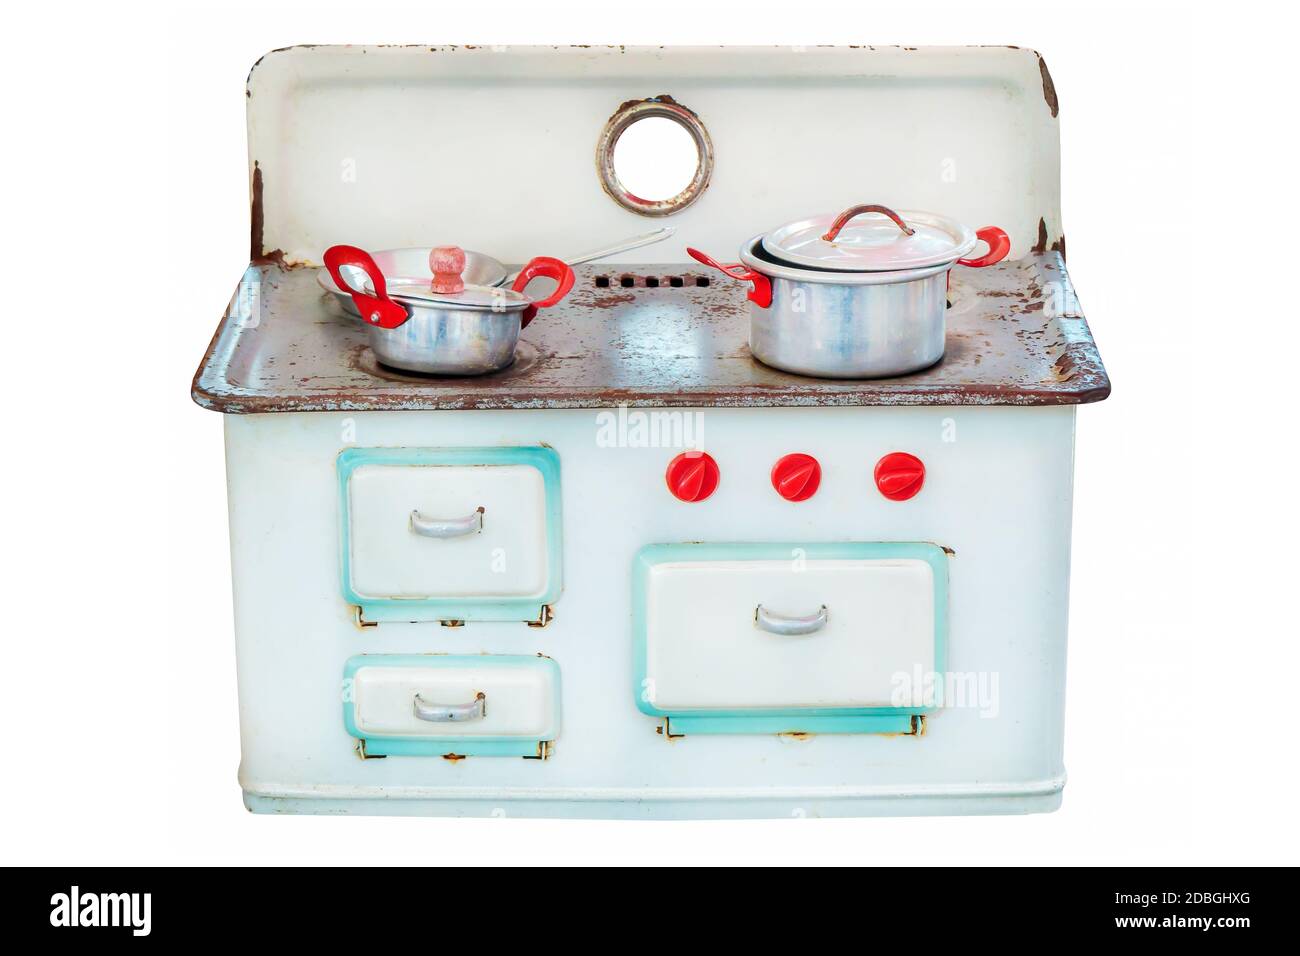 Bambola vintage casa cucina stufa con padelle isolate su uno sfondo bianco Foto Stock